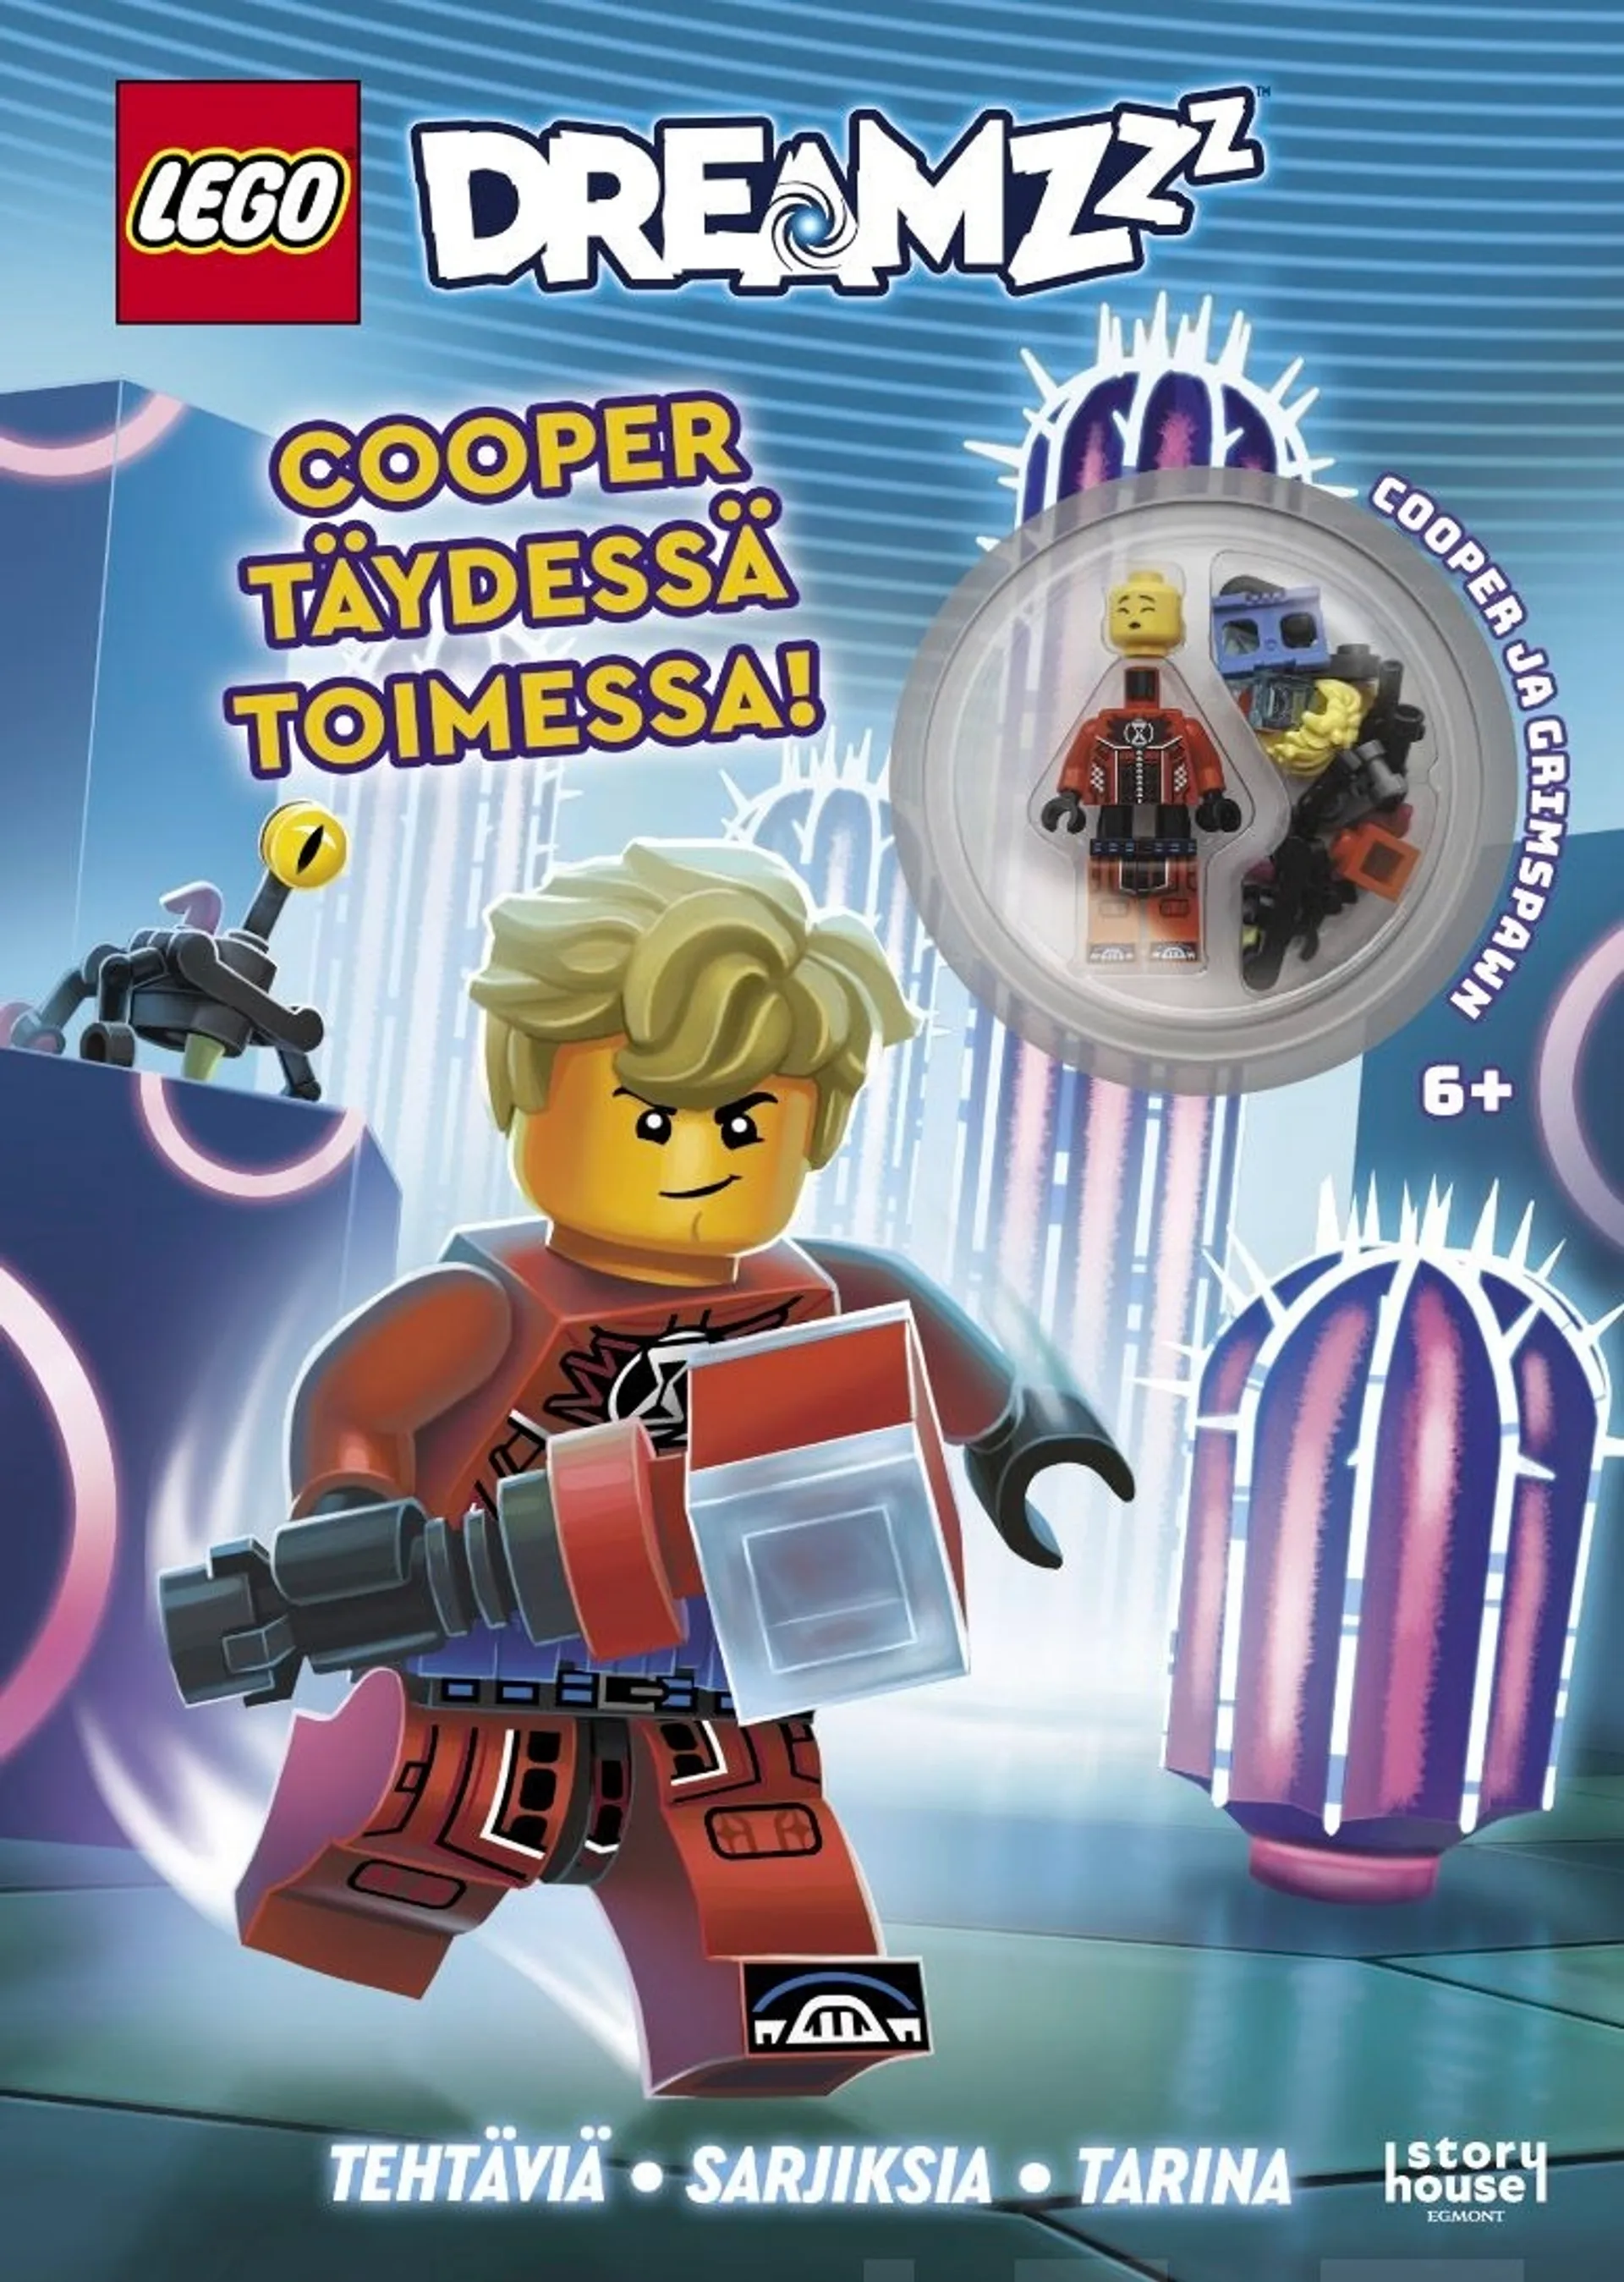 LEGO DREAMZzz Cooper täydessä toimessa - Puuhakirja lelulla